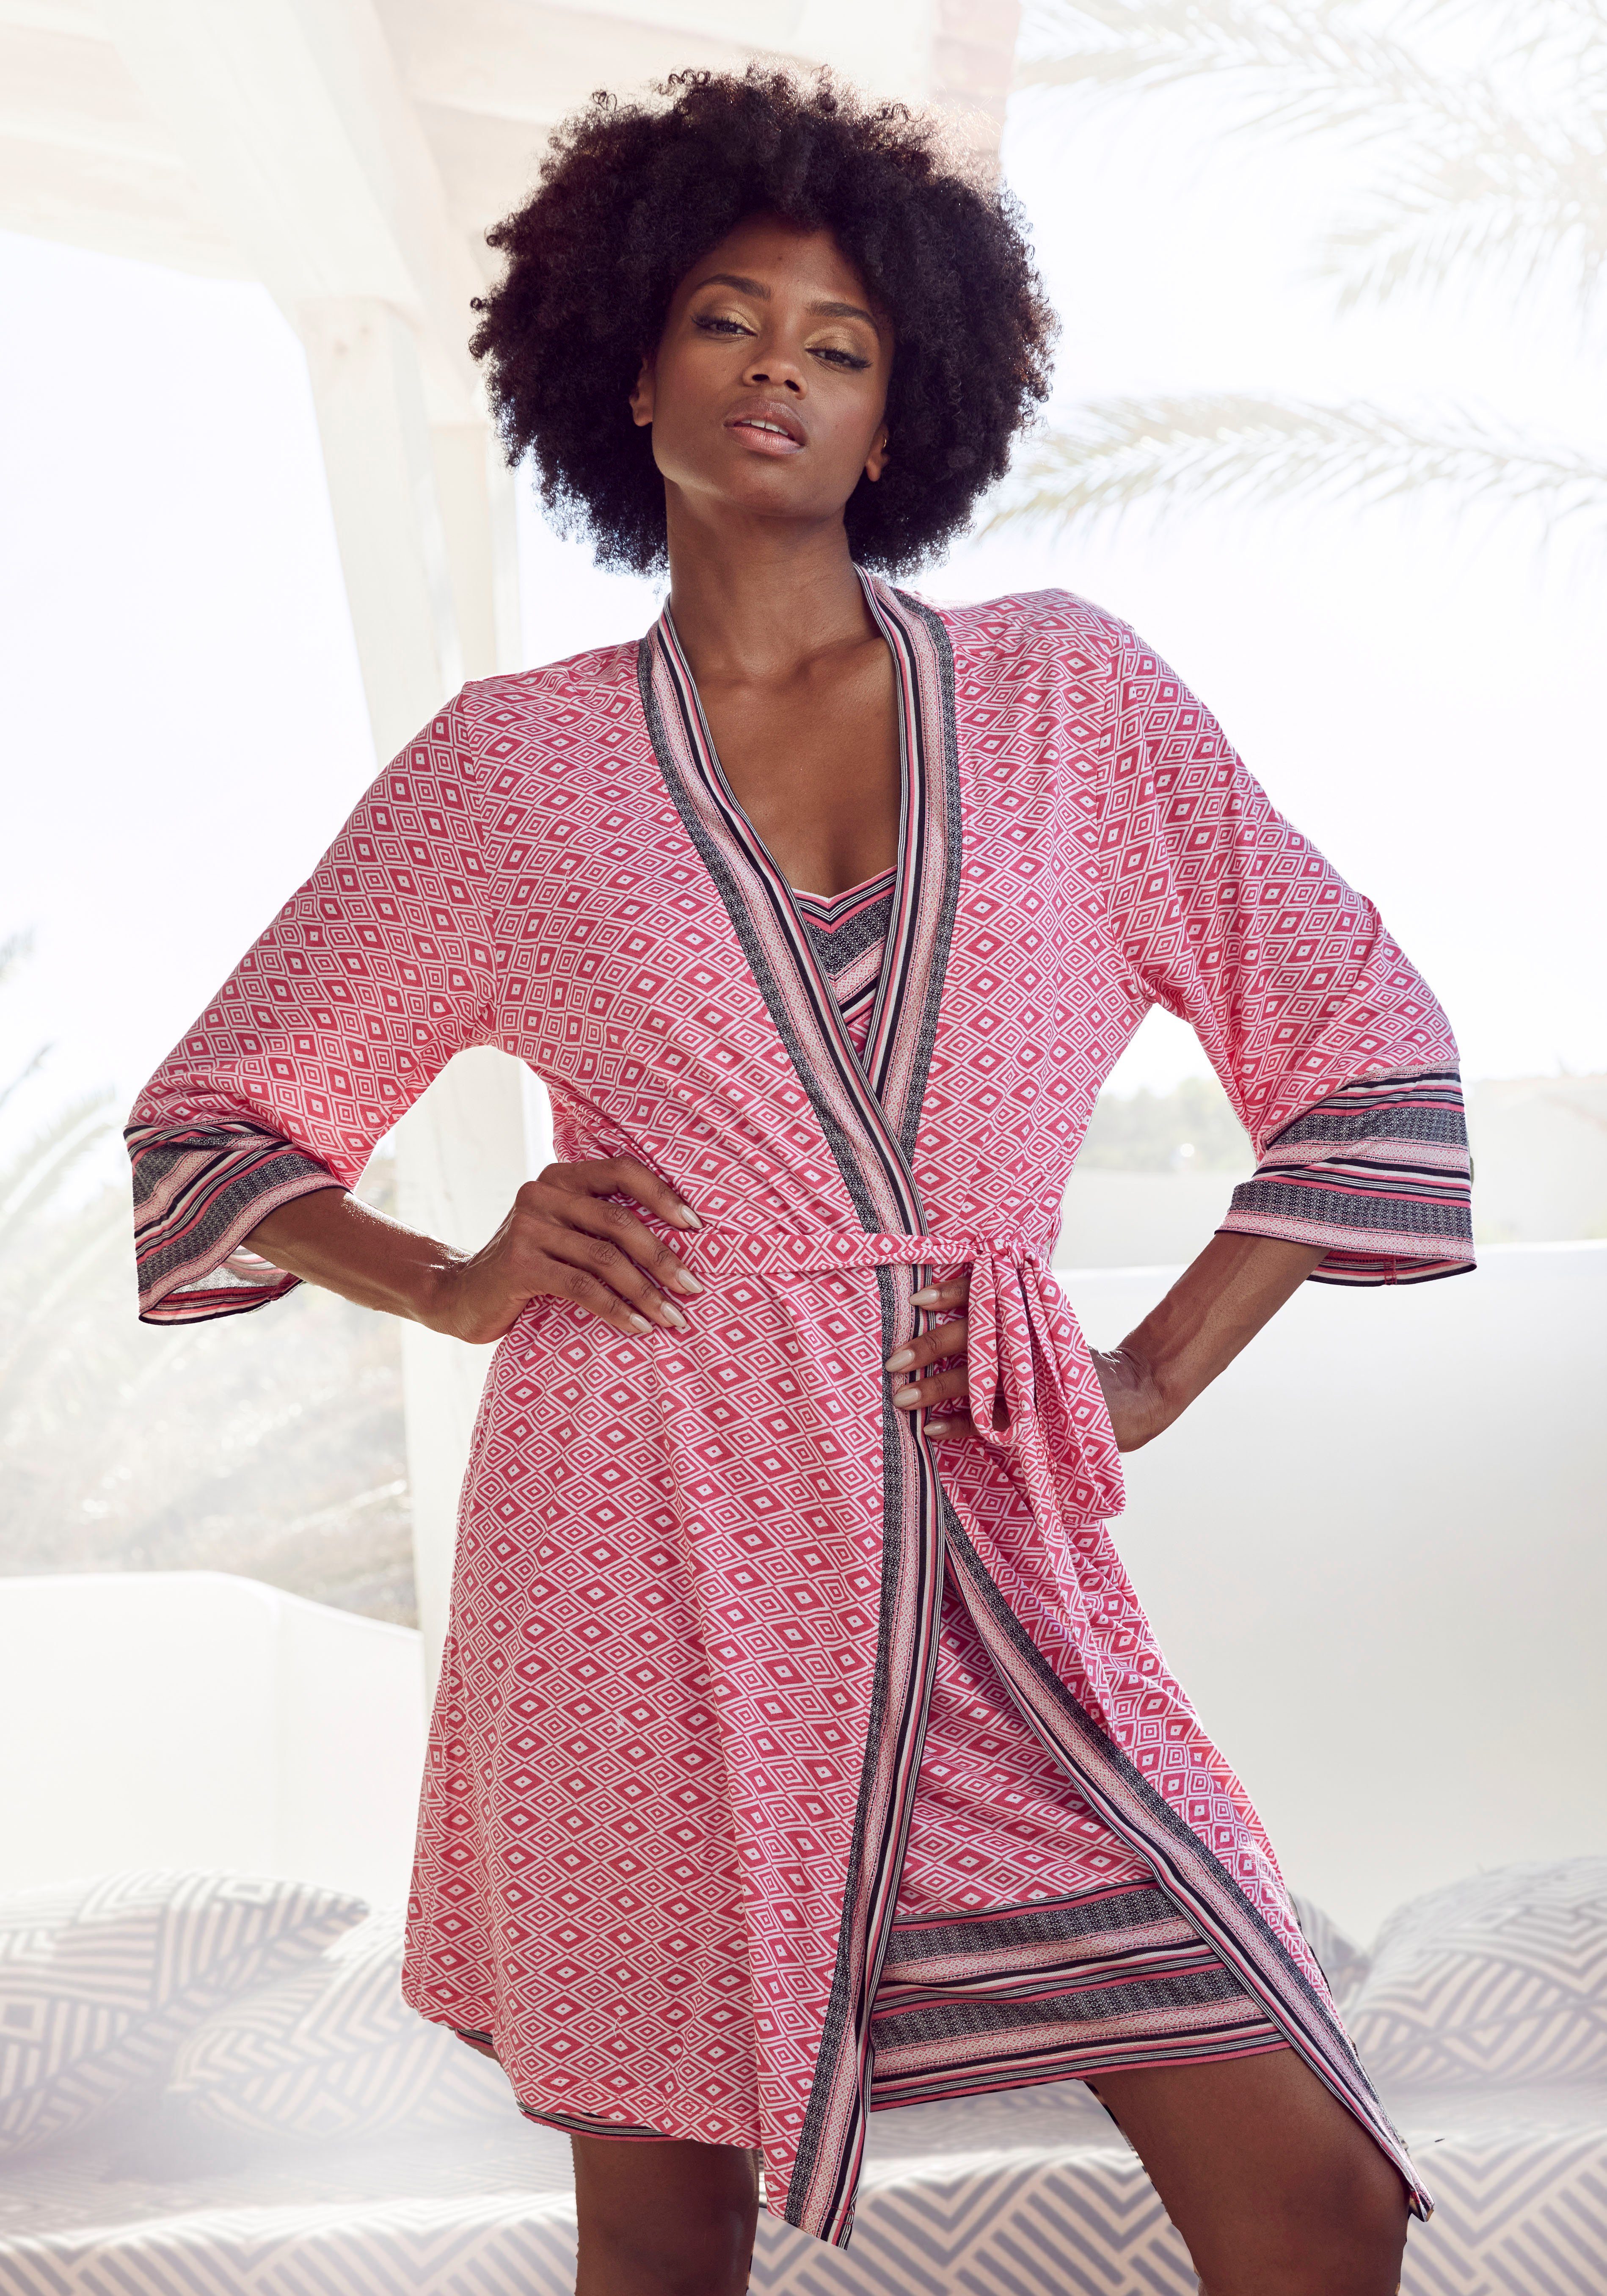 Vivance Dreams Kimono, Kurzform, Single-Jersey, Kimono-Kragen, Gürtel, in schönem Ethno-Design pink gemustert | Kimonos